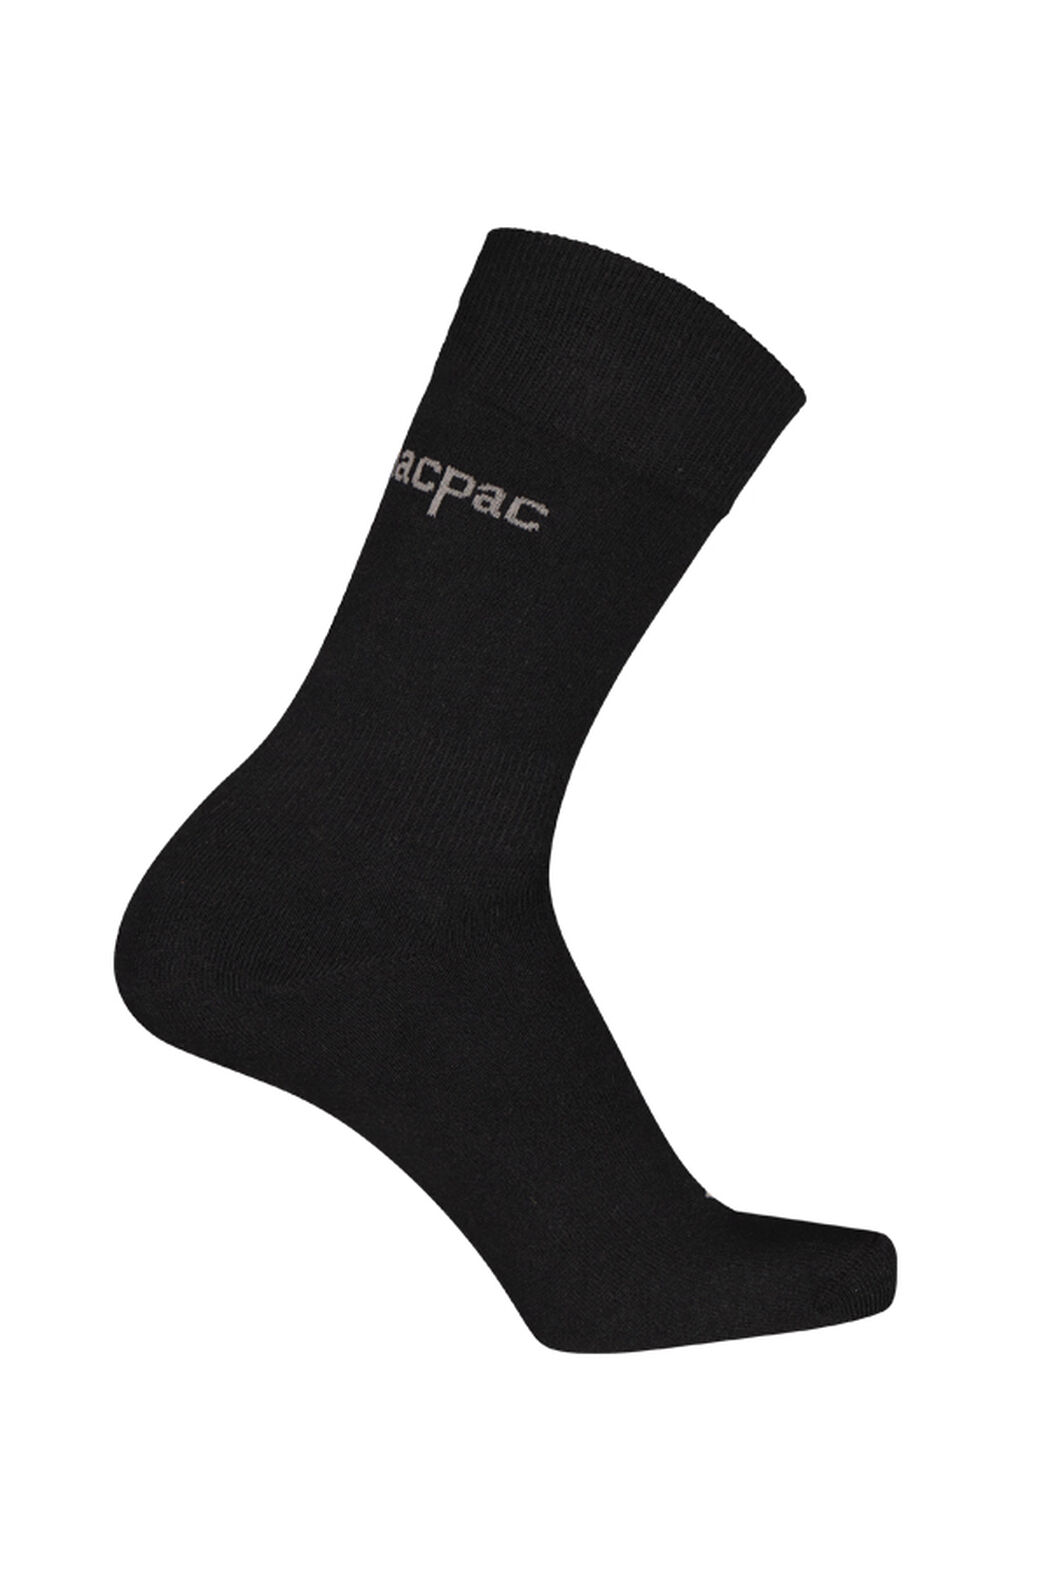 Macpac Liner Sock